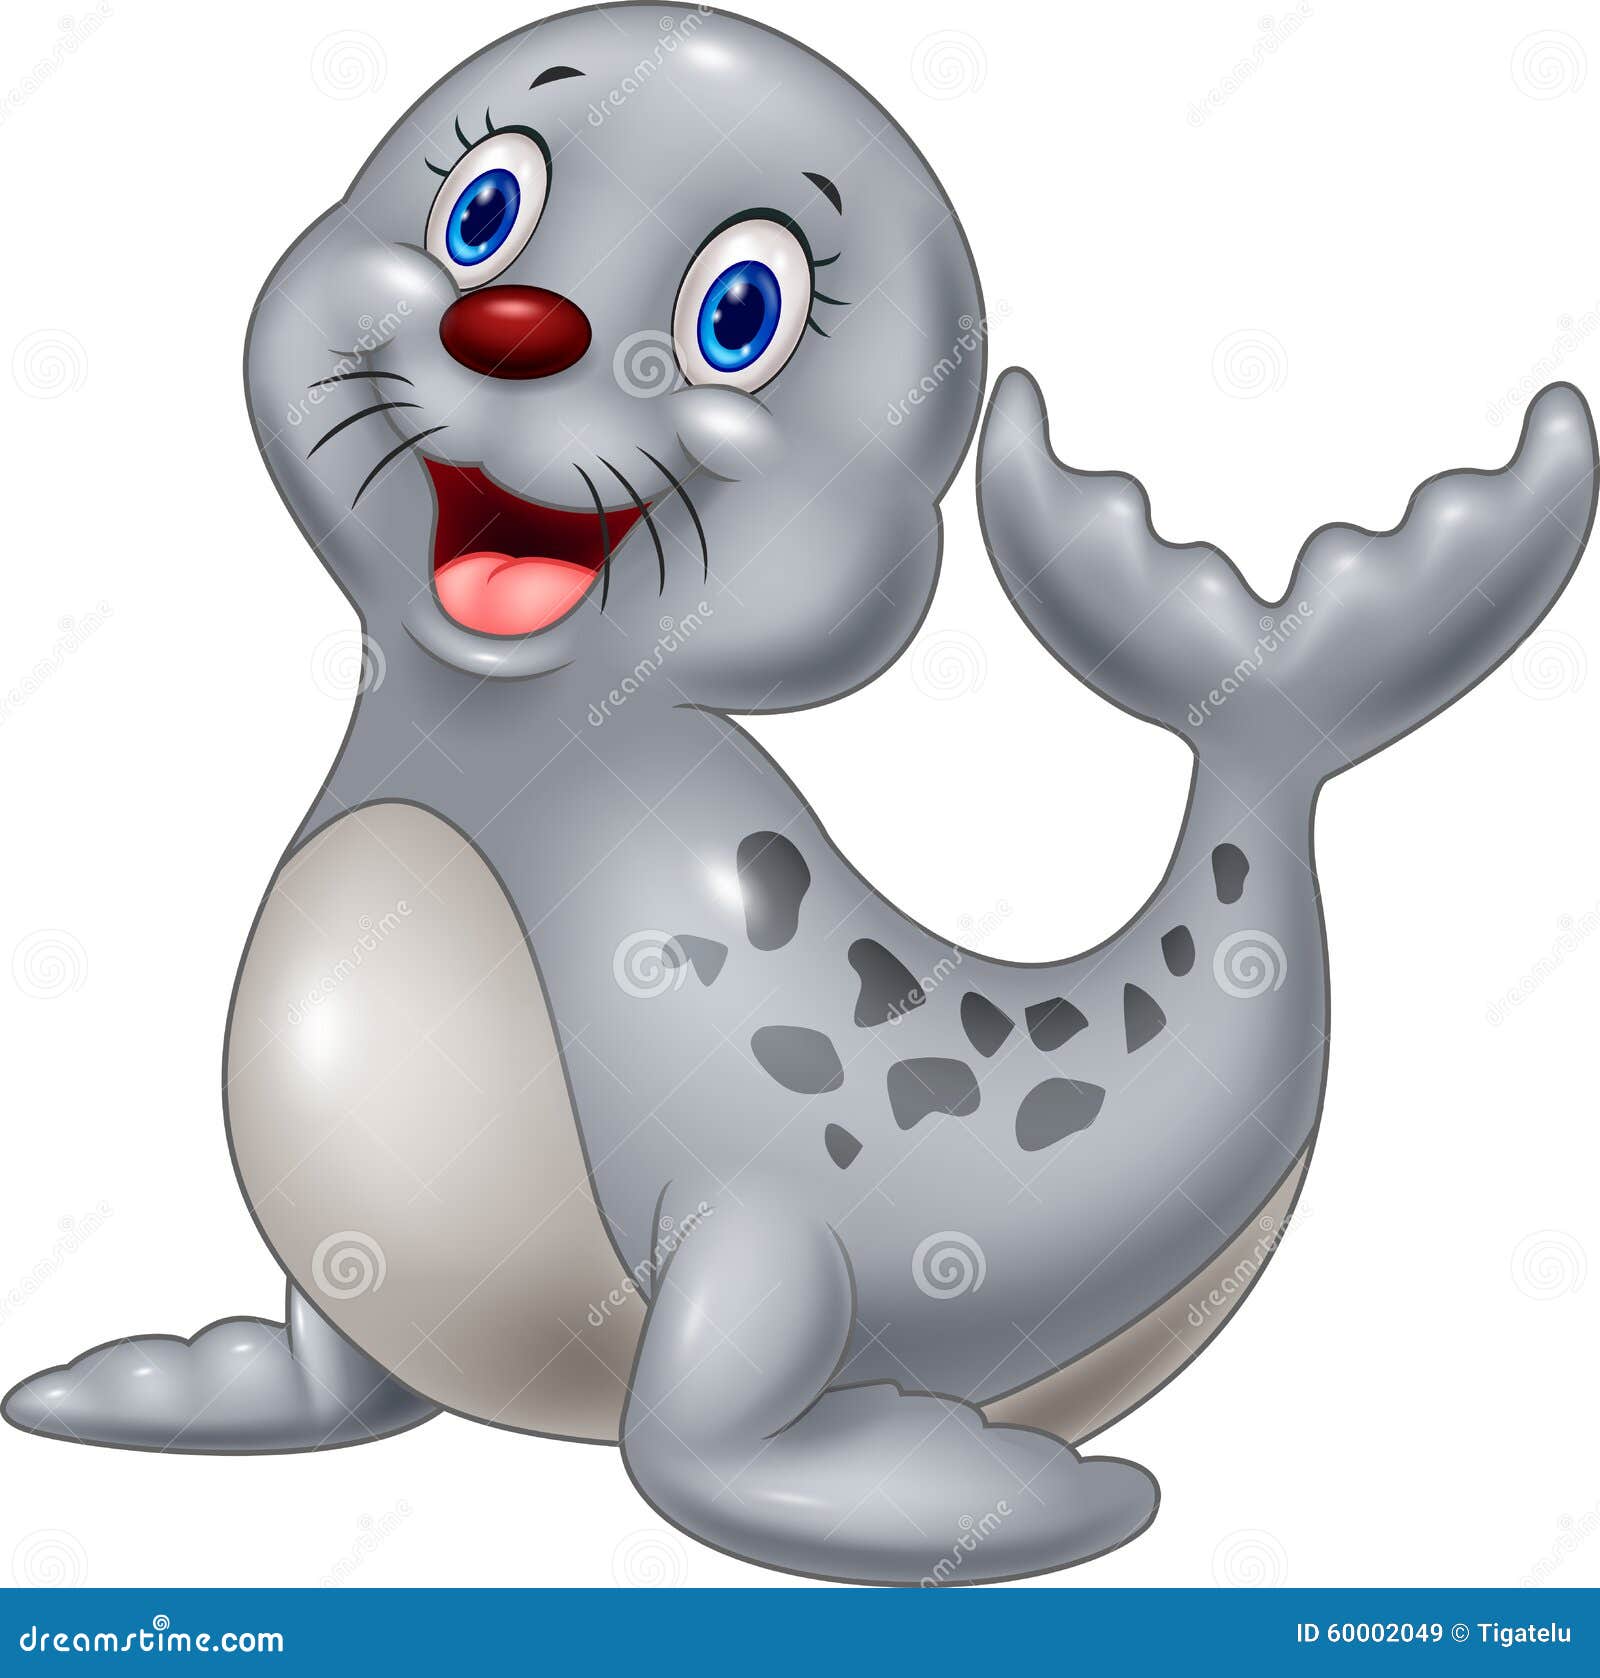 Fumetto sveglio del cucciolo di foca su fondo bianco Immagini Stock Libere da Diritti